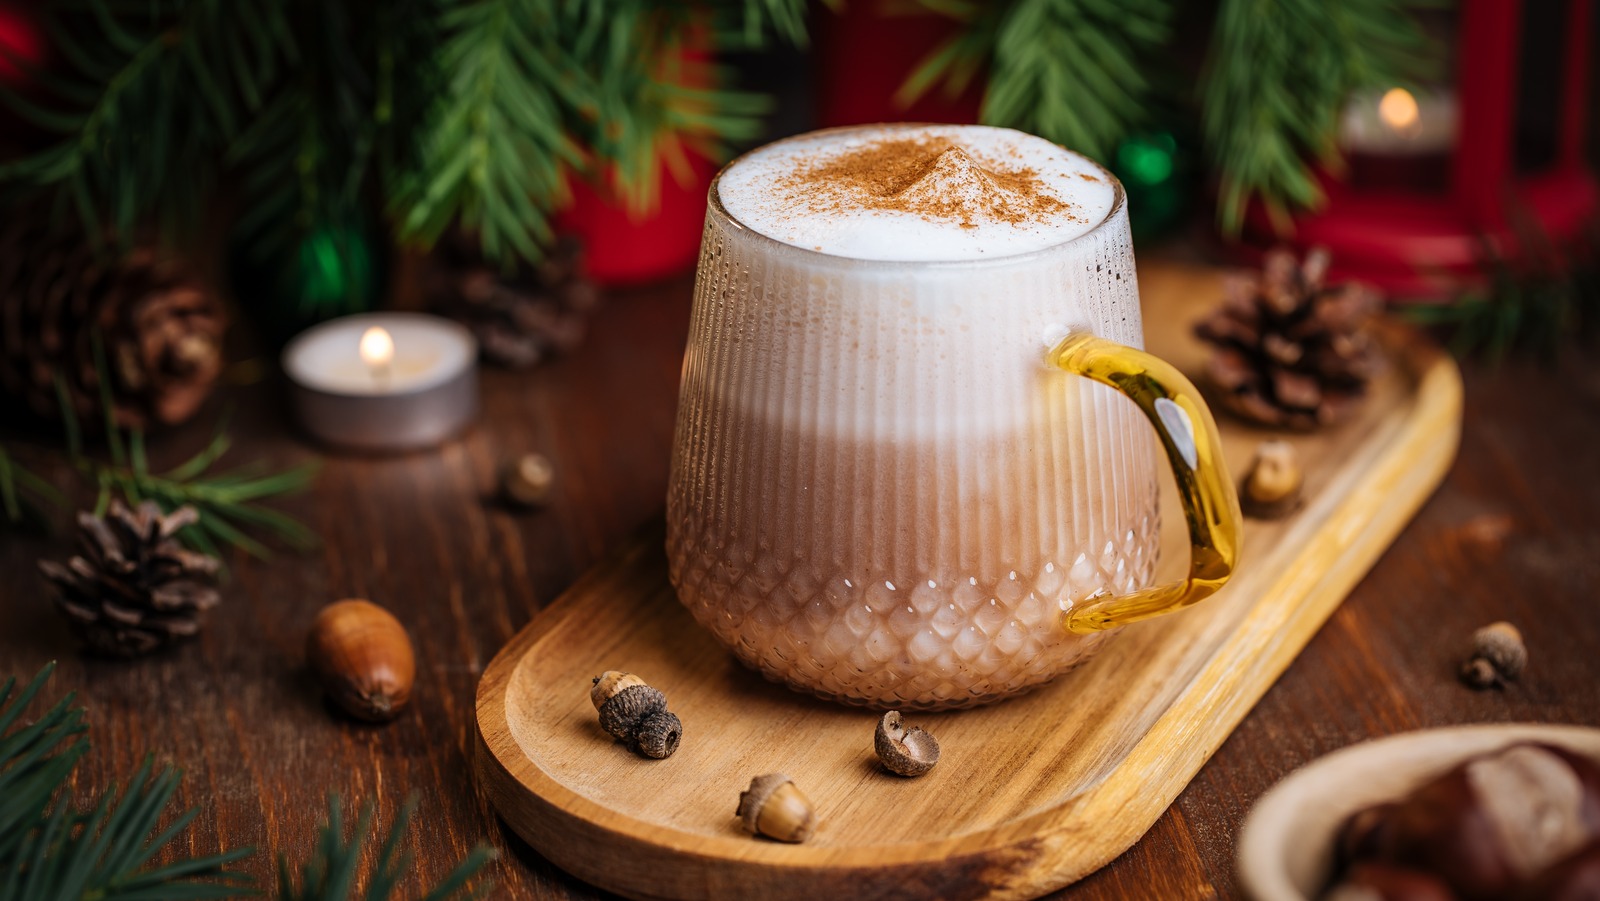 Homemade Eggnog Coffee Creamer: Your Guide to Festive Flavor!